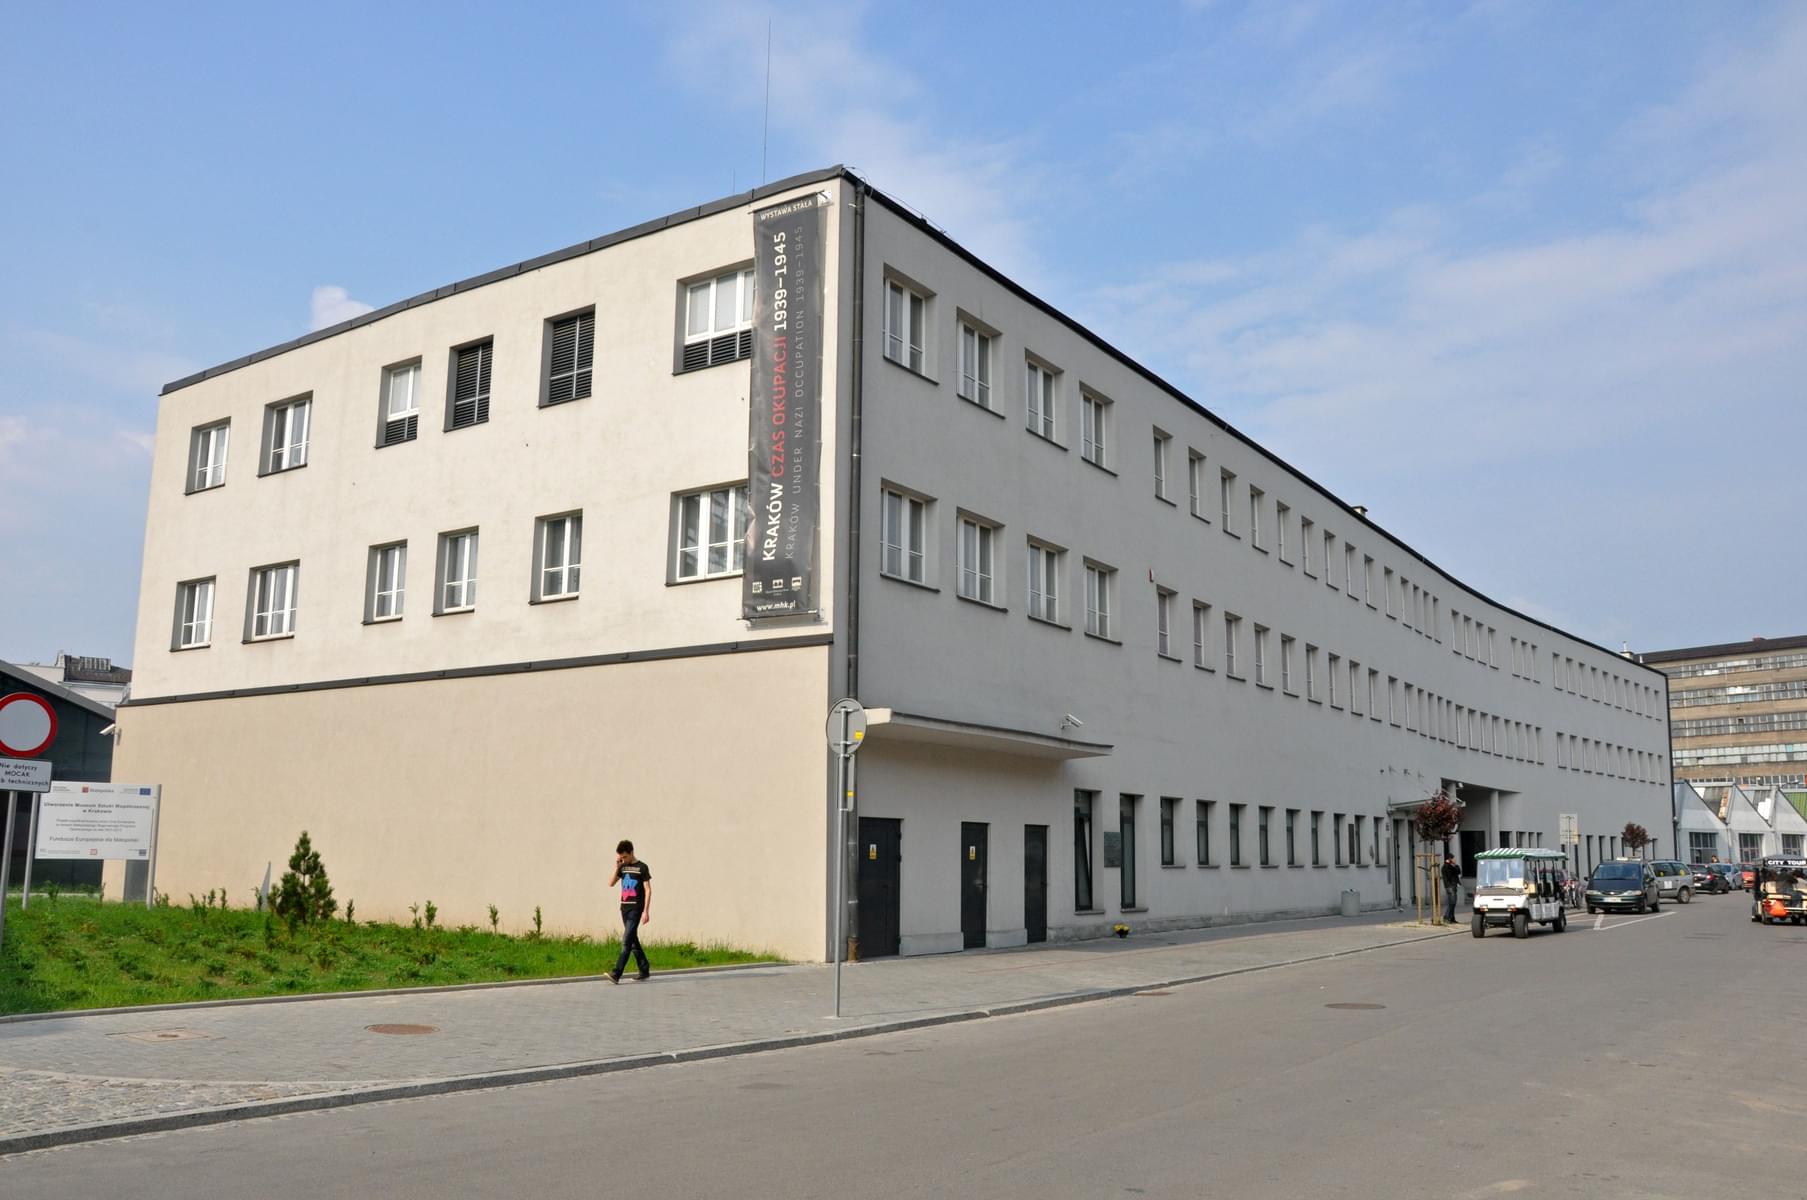 Skip The Line Combo: Wieliczka Salt Mine + Schindler's Factory